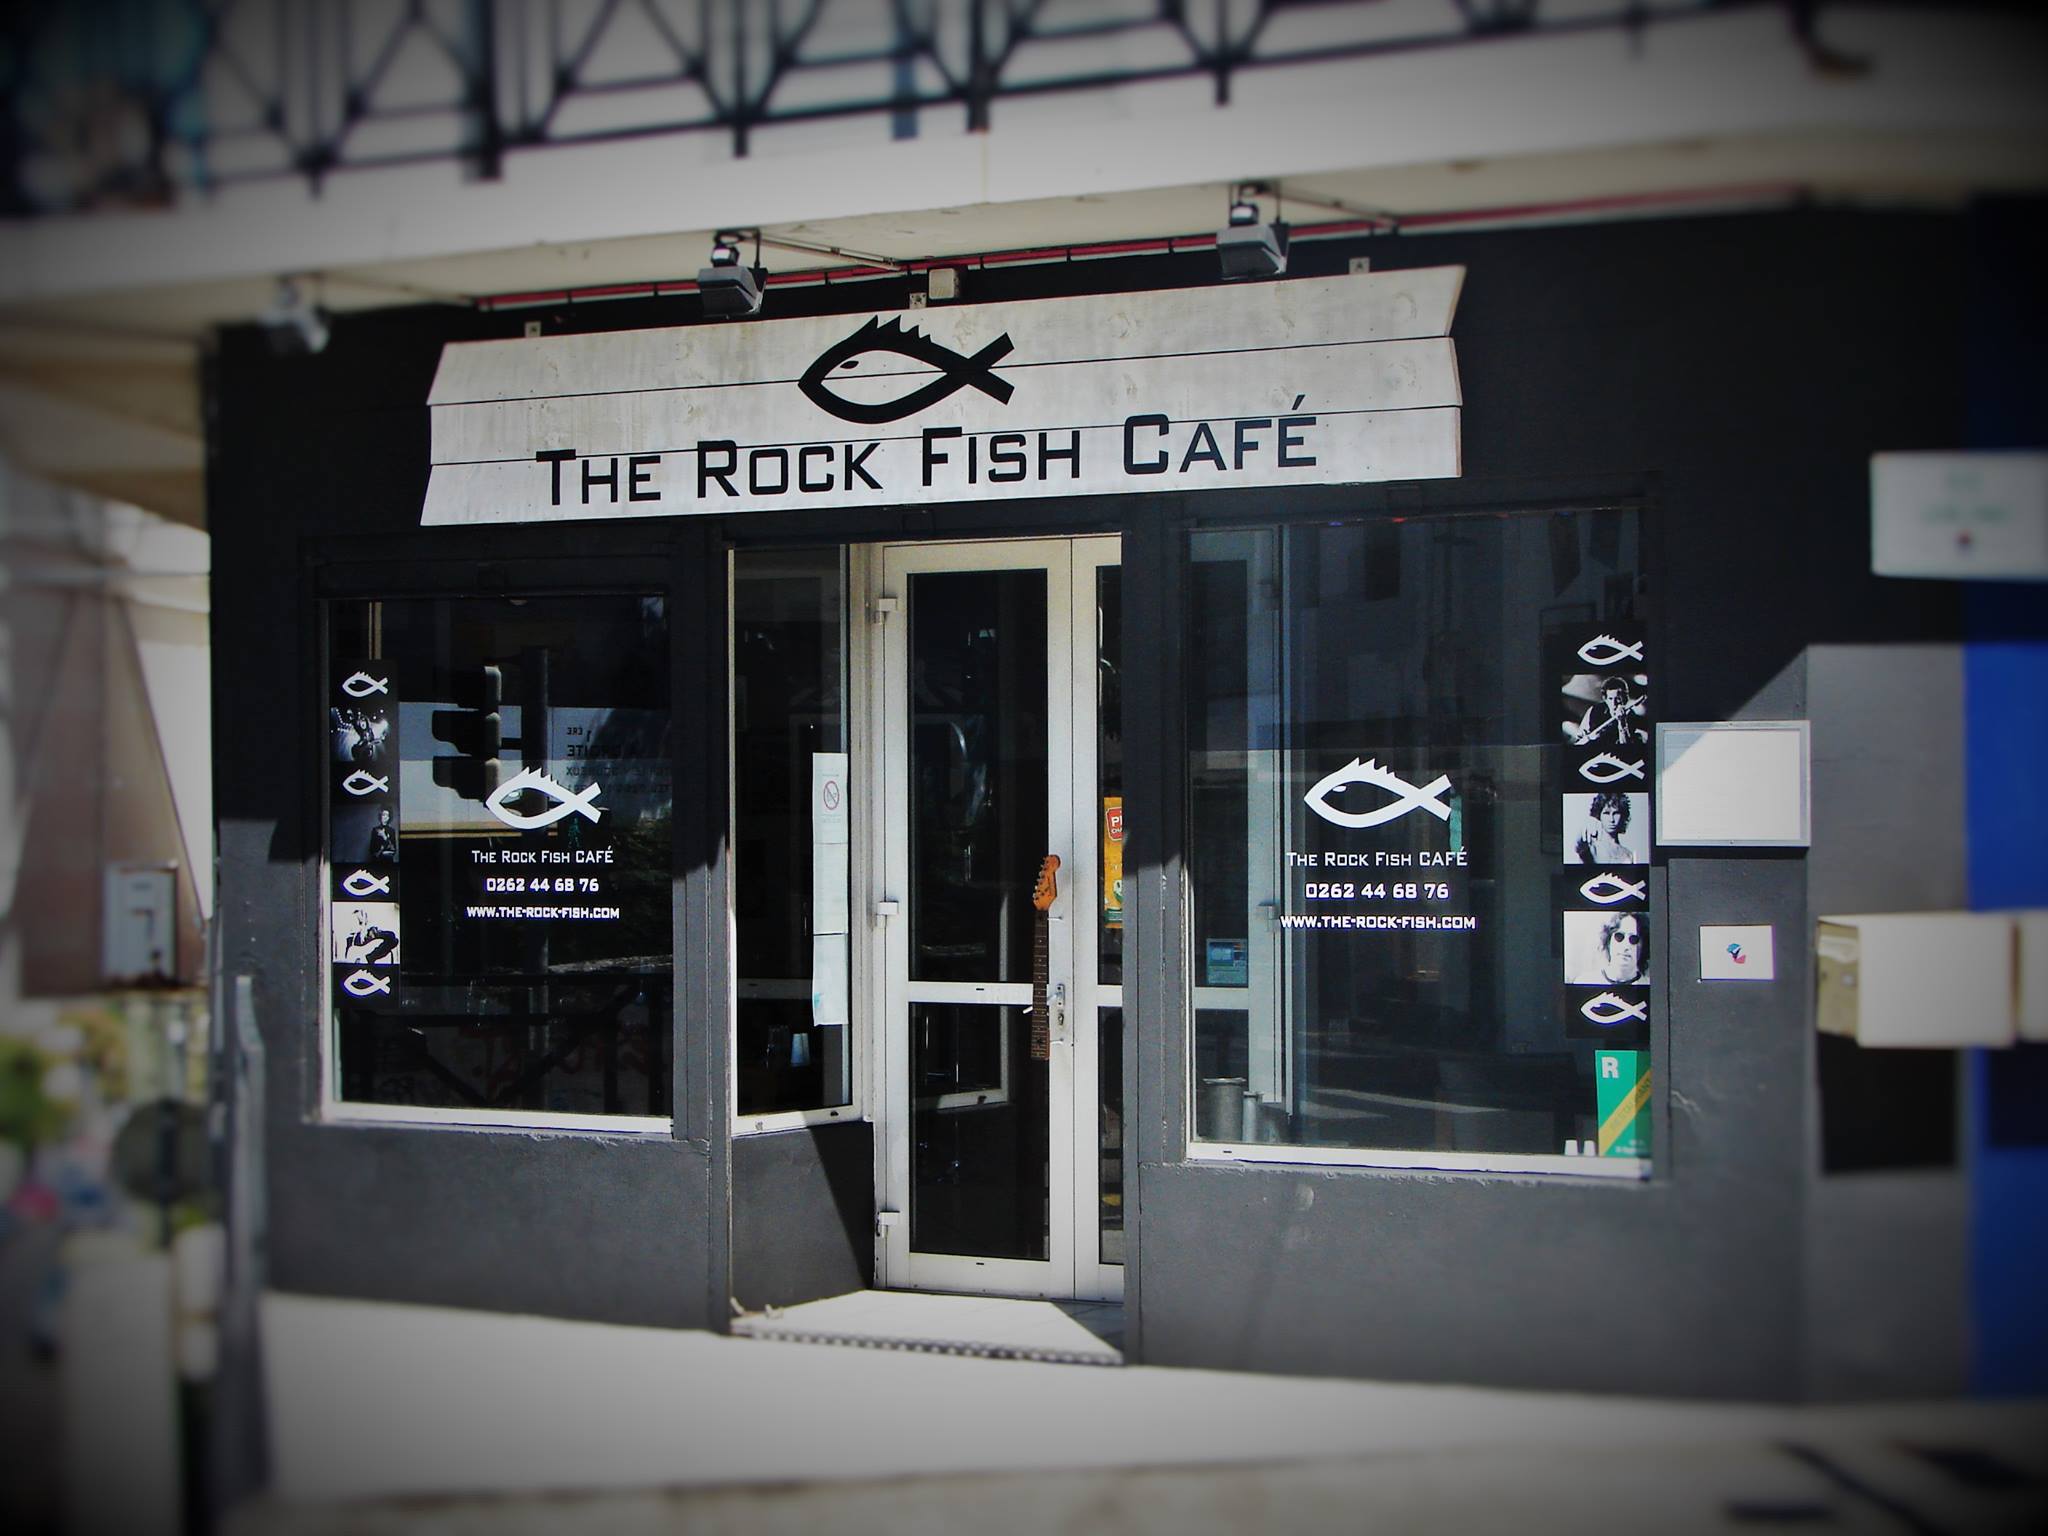 The Rock Fish Café